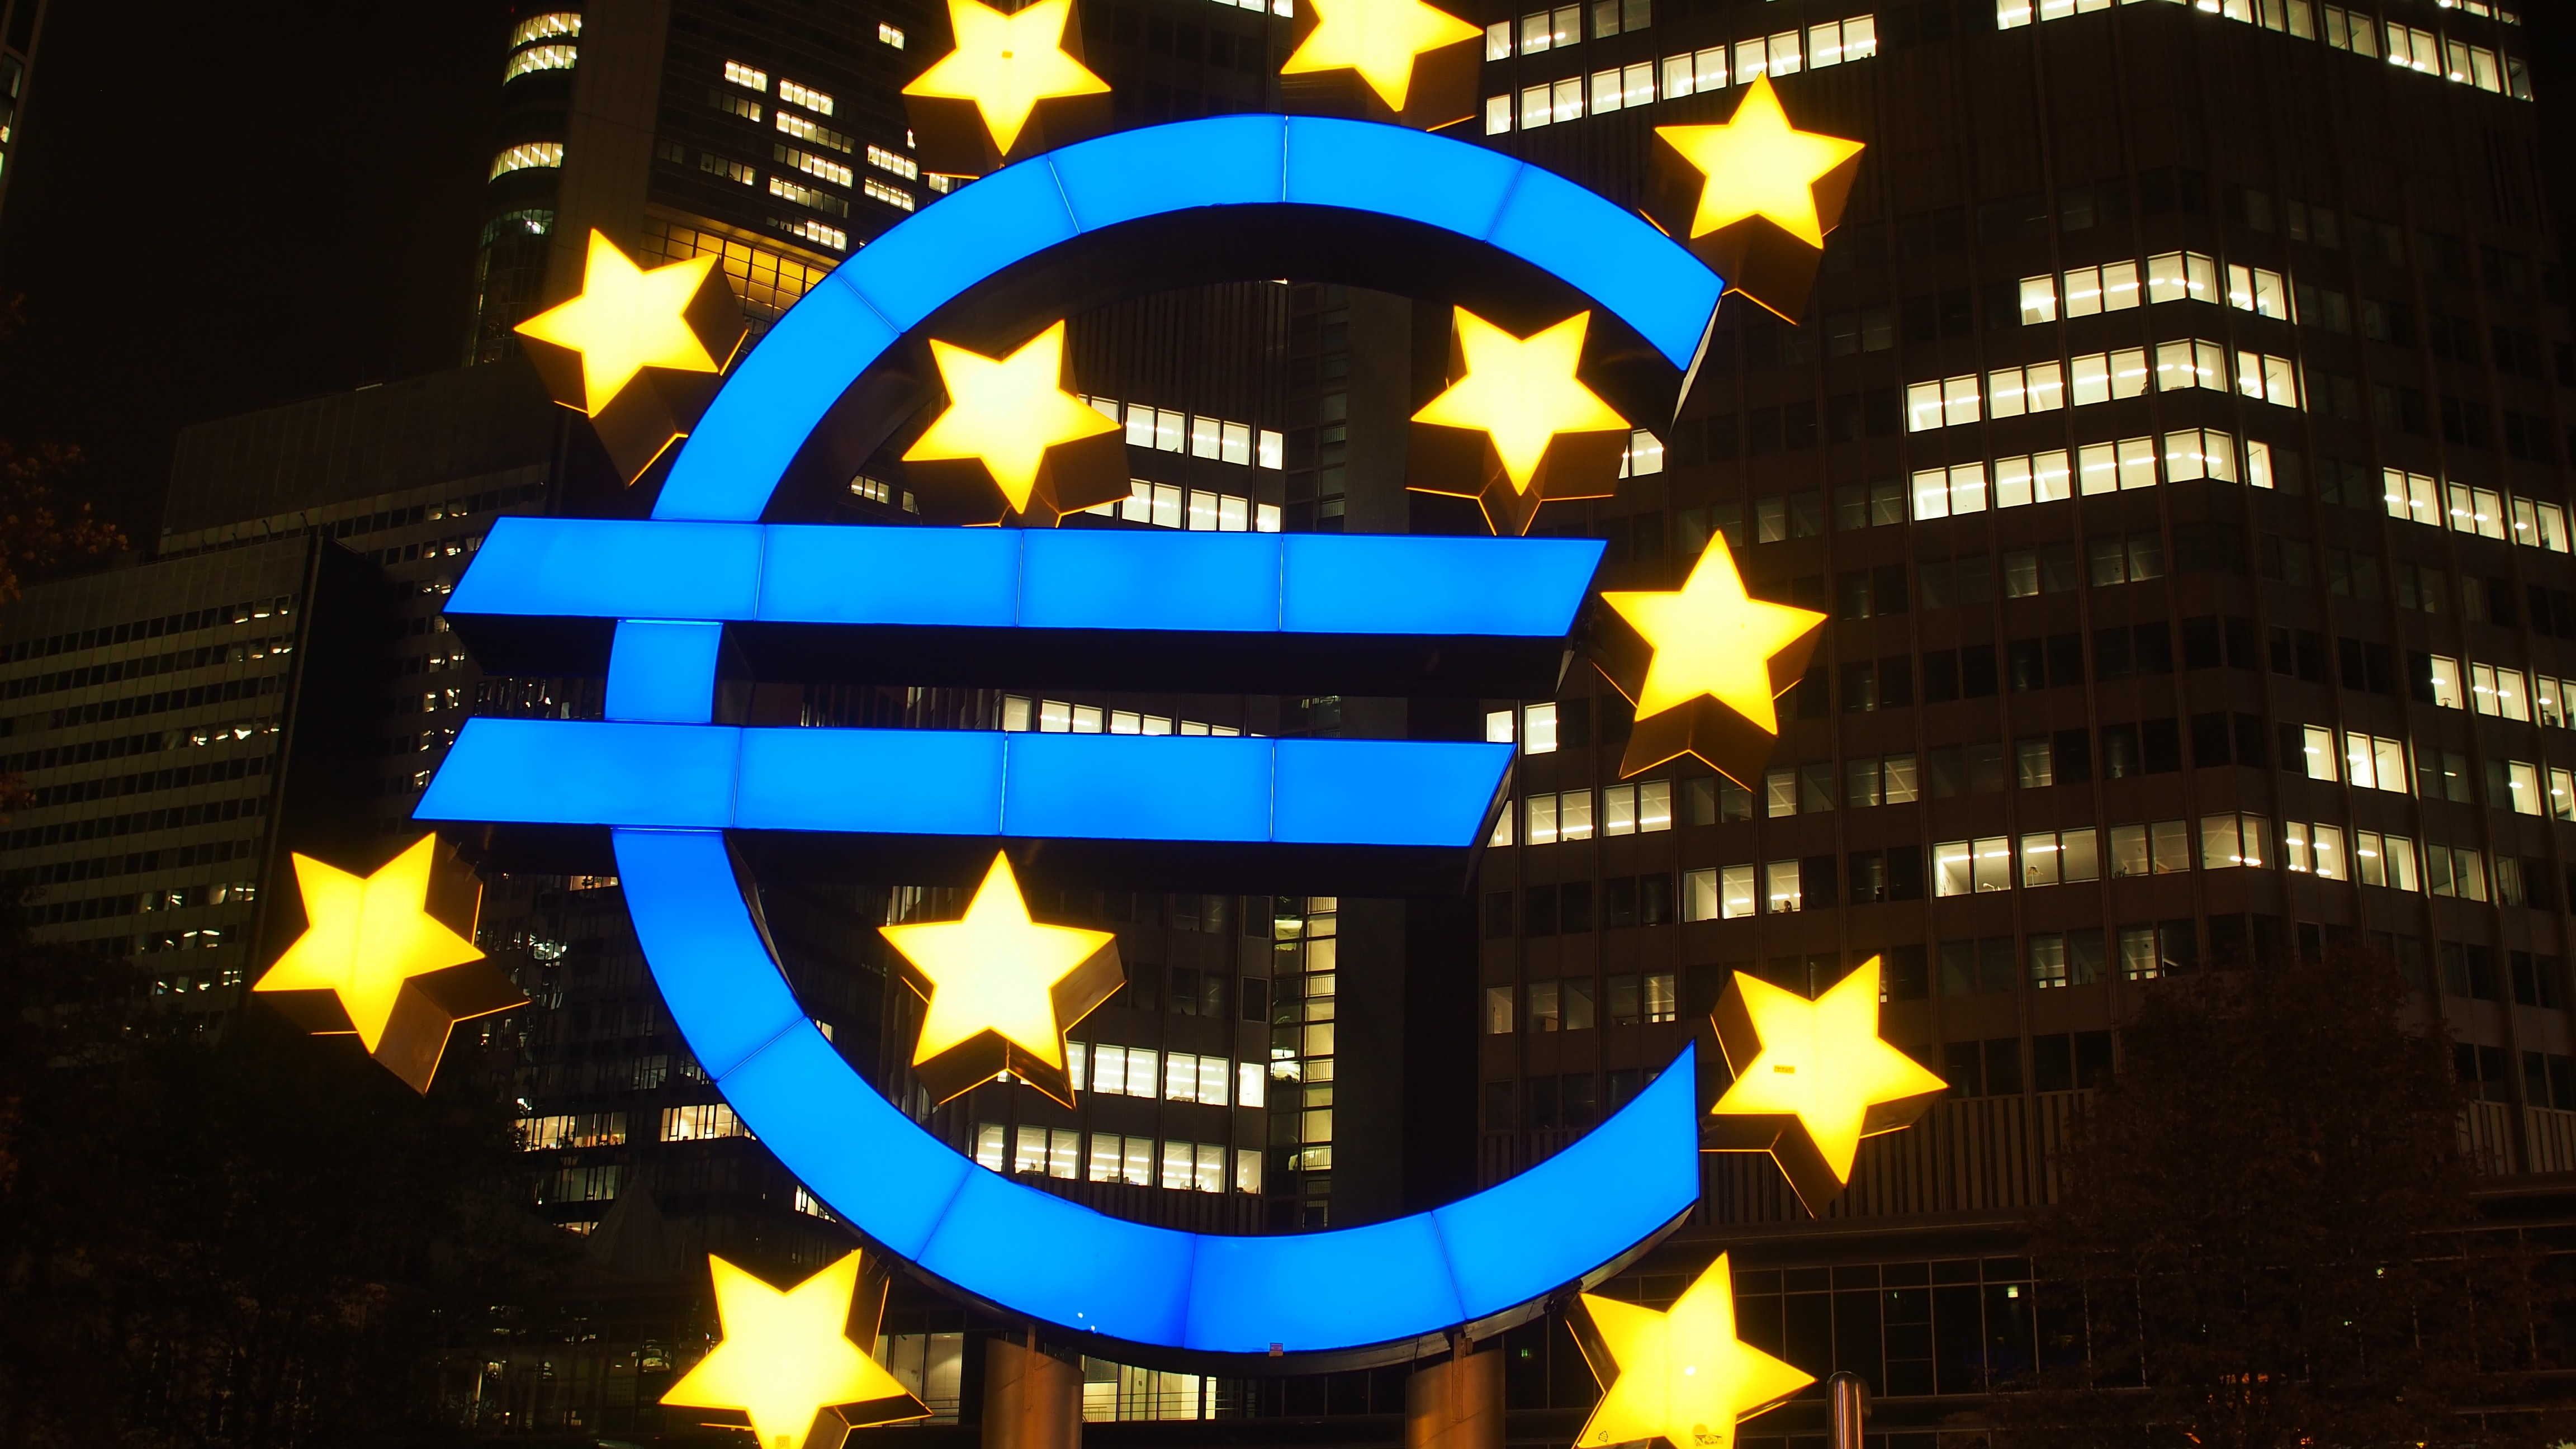 Avrupa Merkez Bankası tarihi dönemeçlerden birine giriyor